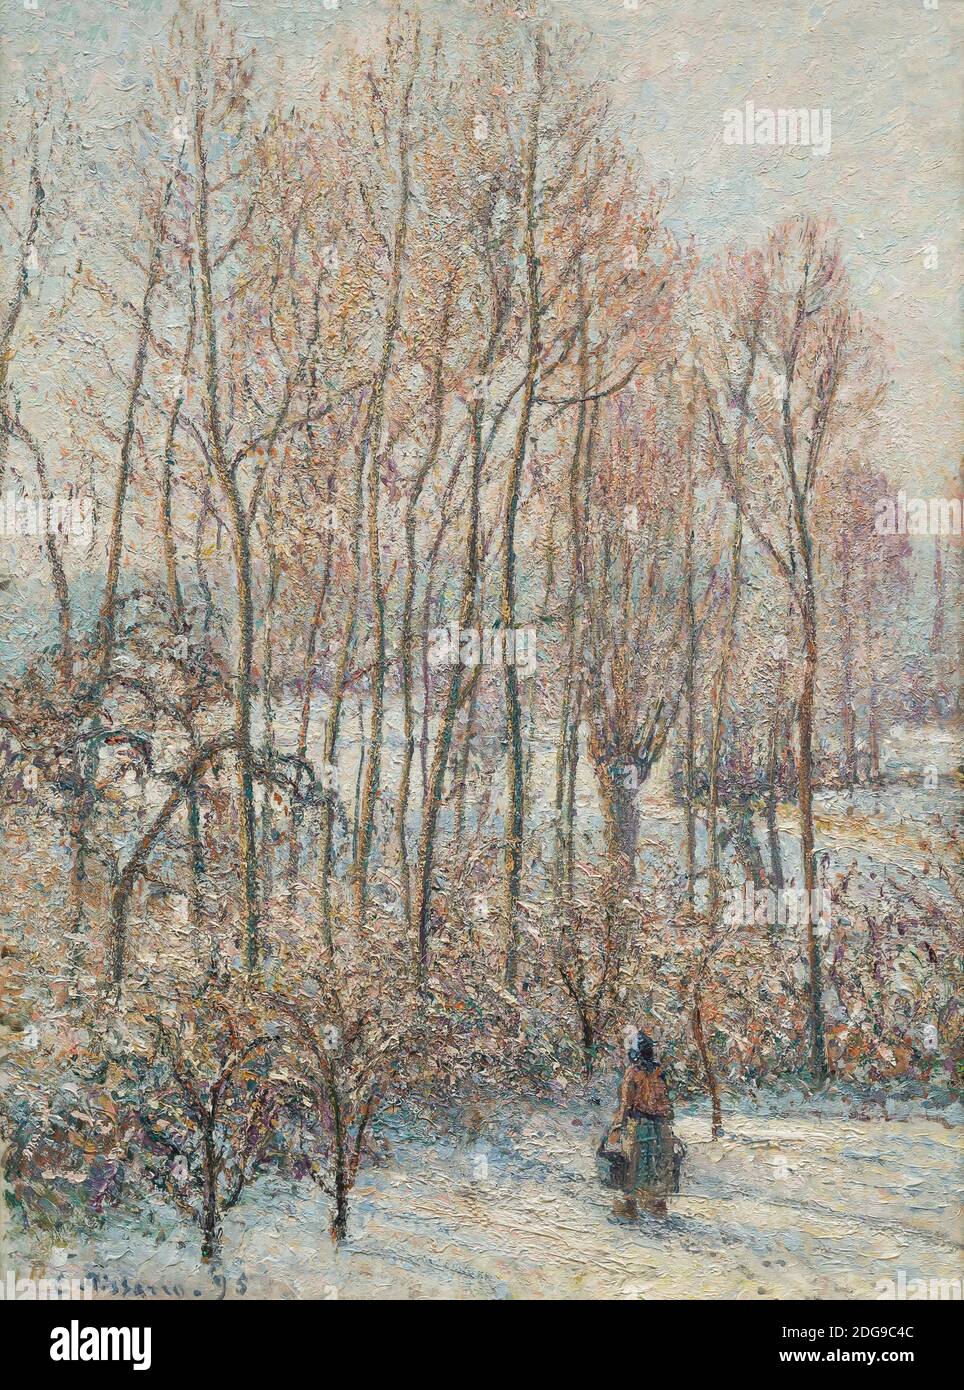 Mattina luce del sole sulla neve, Eragny-sur-Epte, Camille Pissarro, 1895, Foto Stock